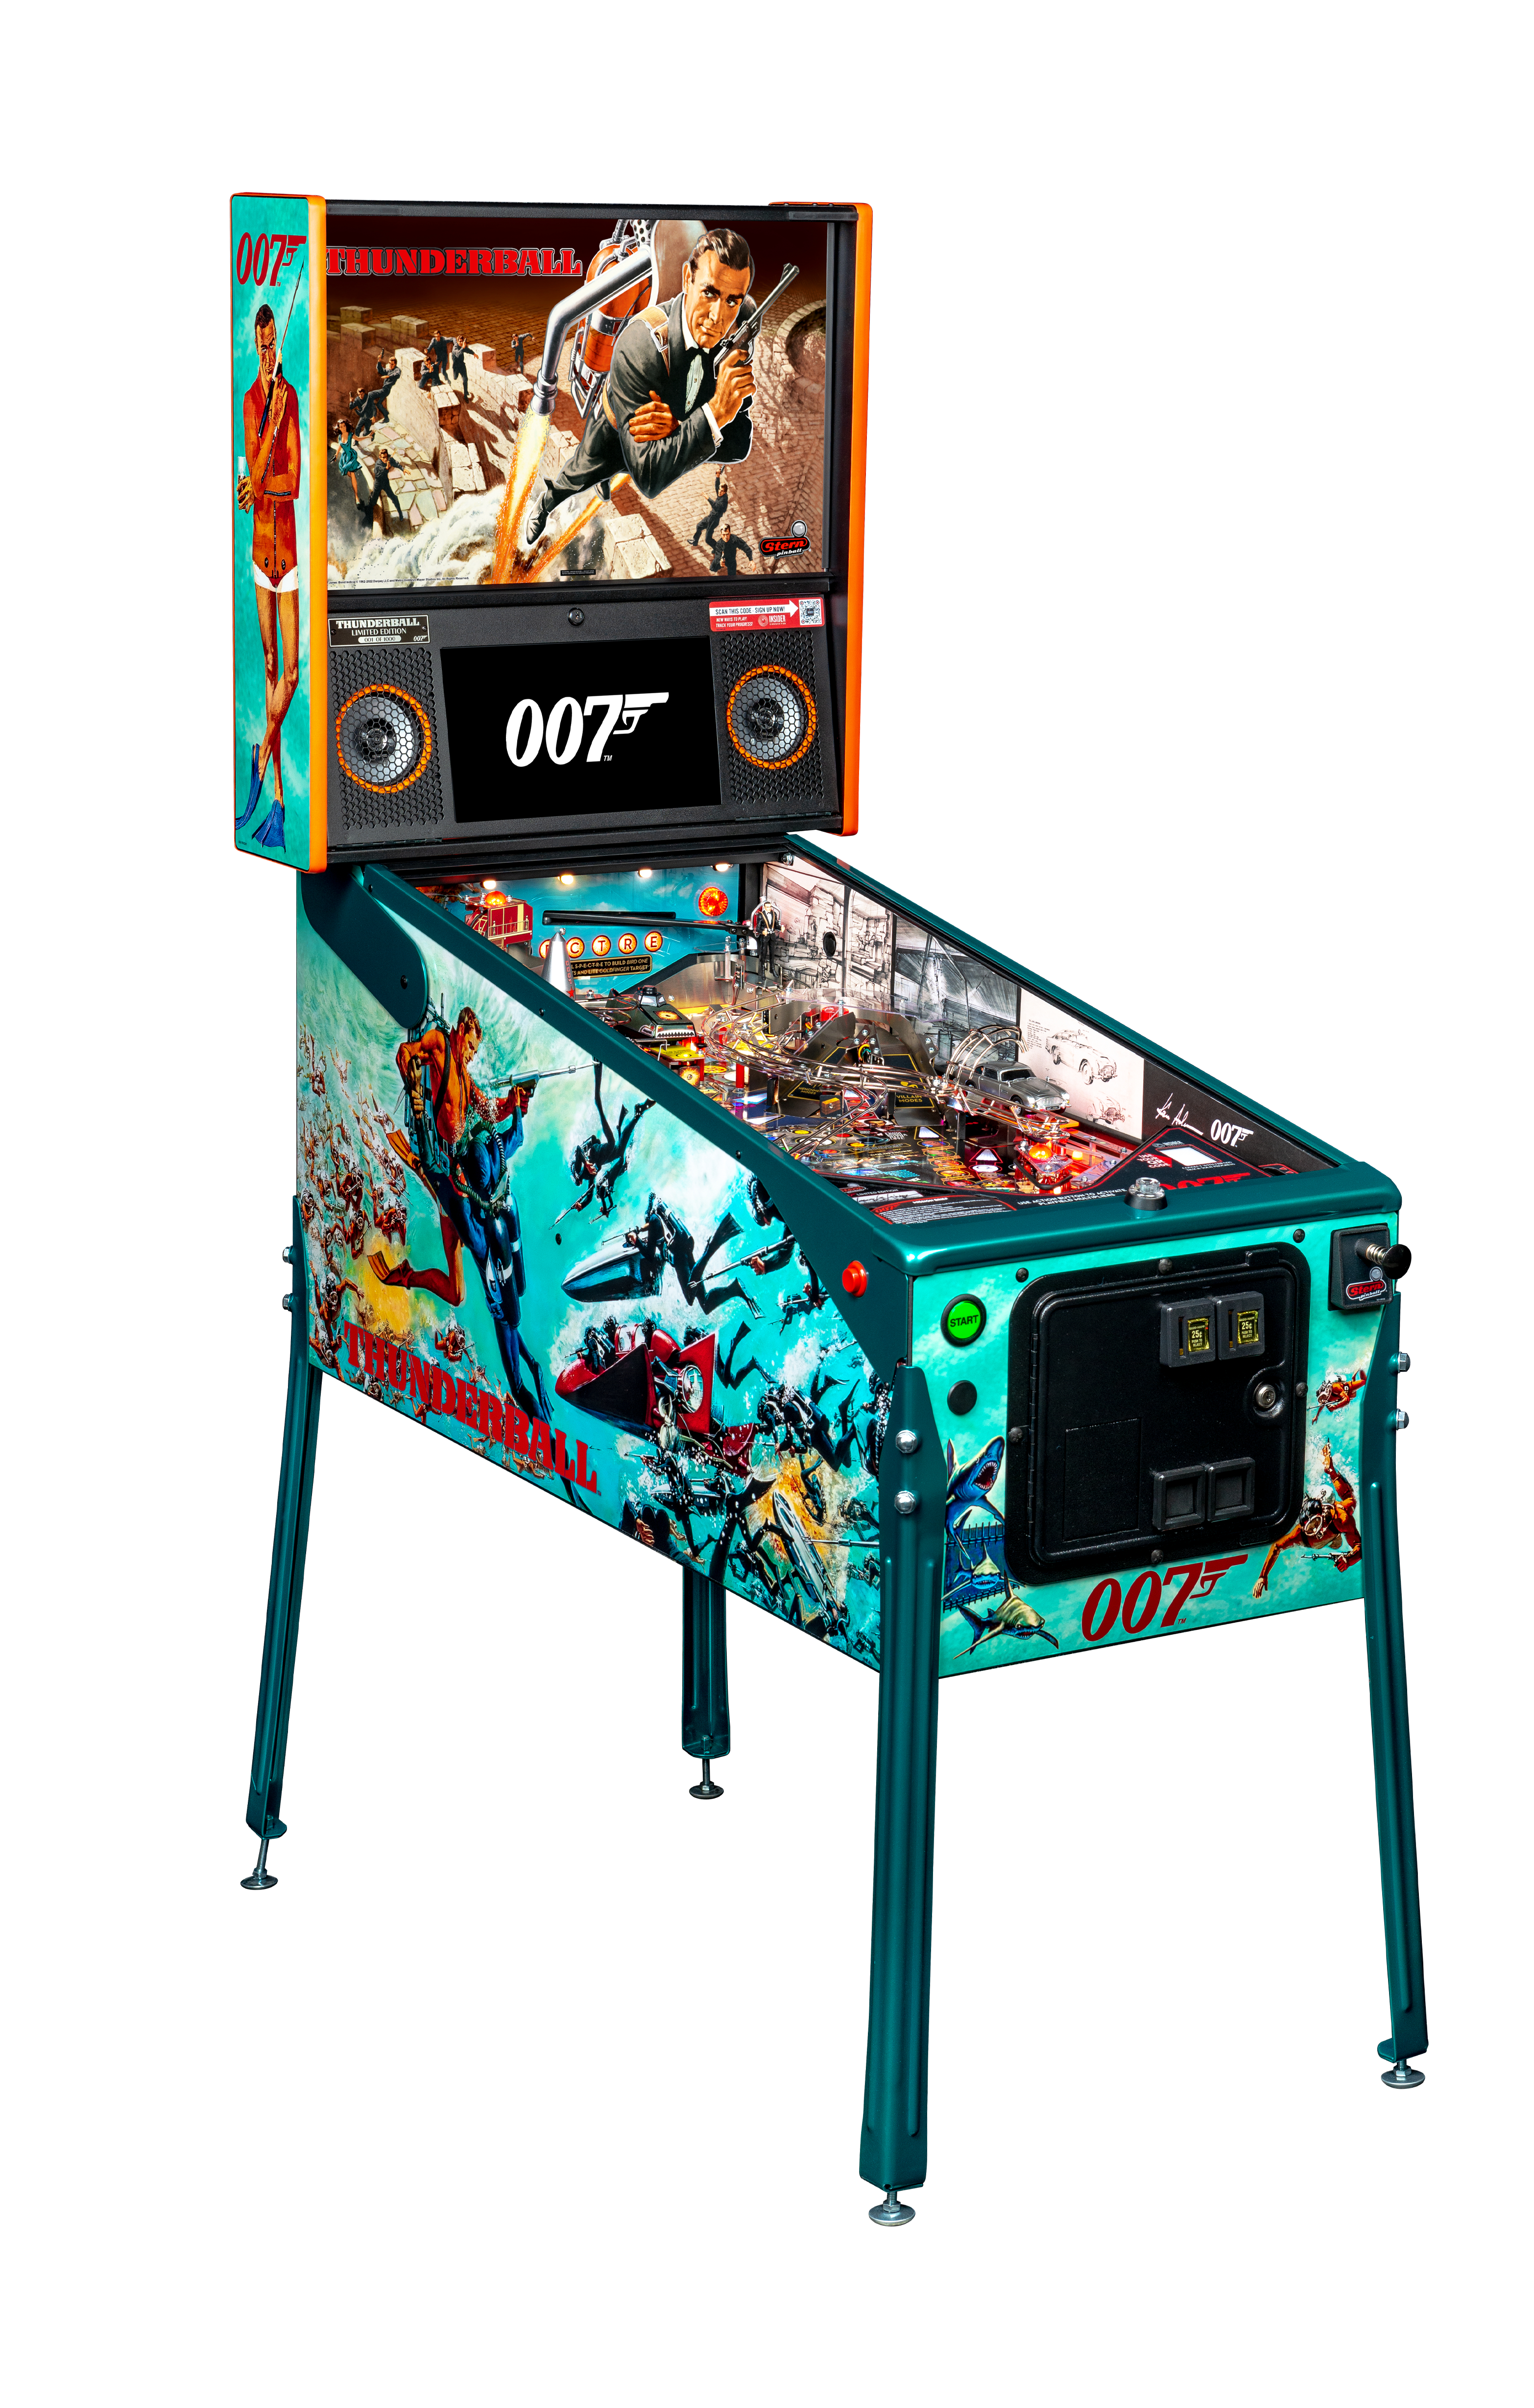 New James Bond Pinball Machines